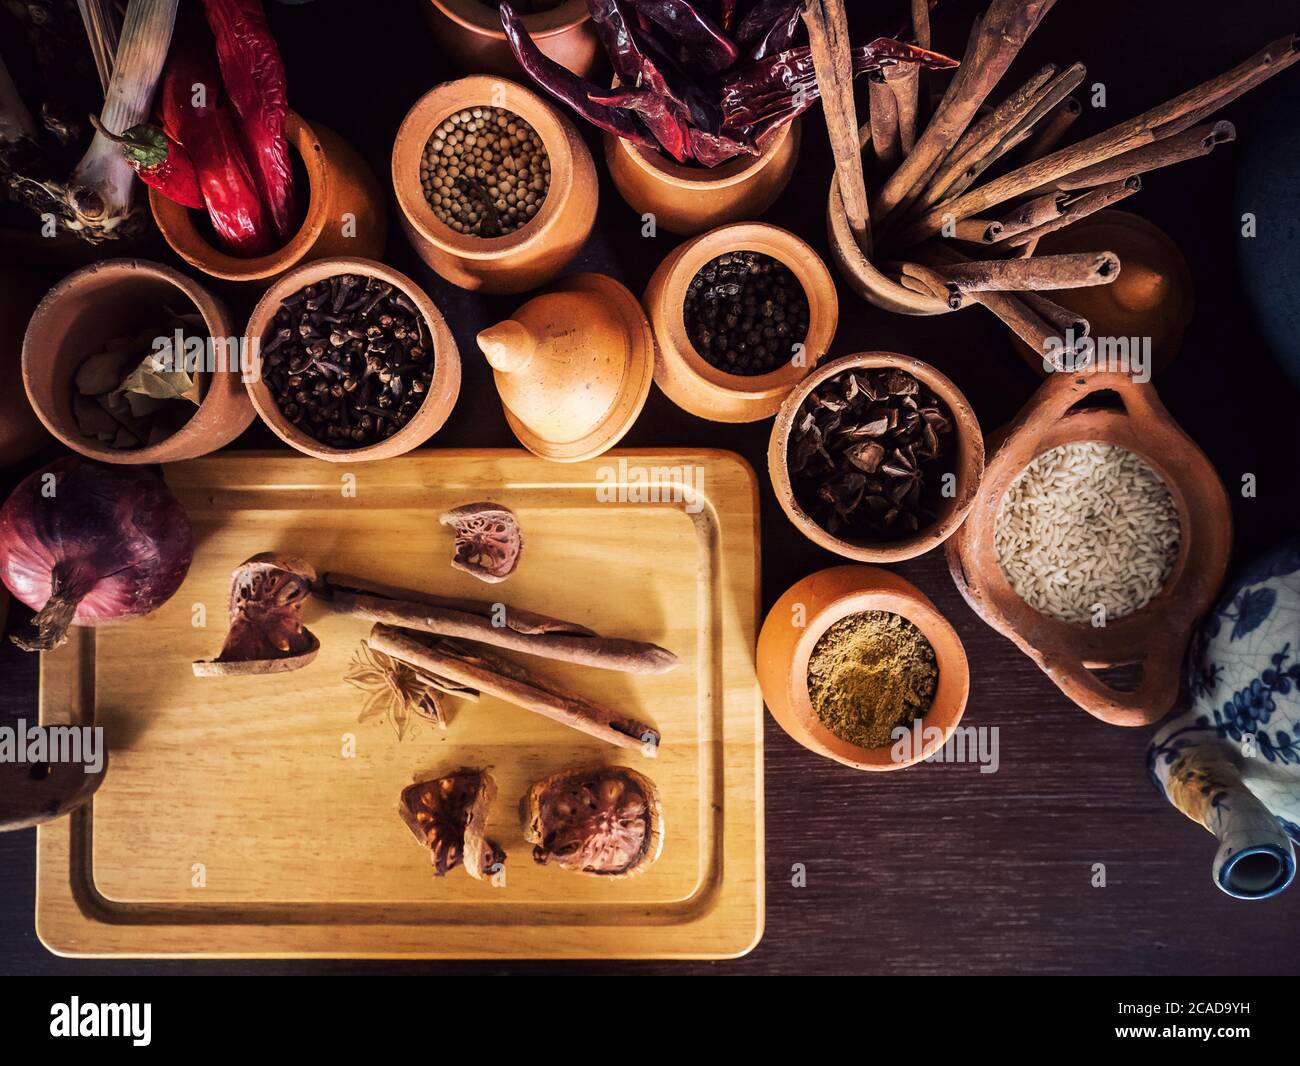 Akribische asiatische Gewürze Zutaten Konzept. Gewürze und Kräuter auf altem Küchentisch. Essen und Küche Zutaten zum Würzen, Blick von oben Stockfoto